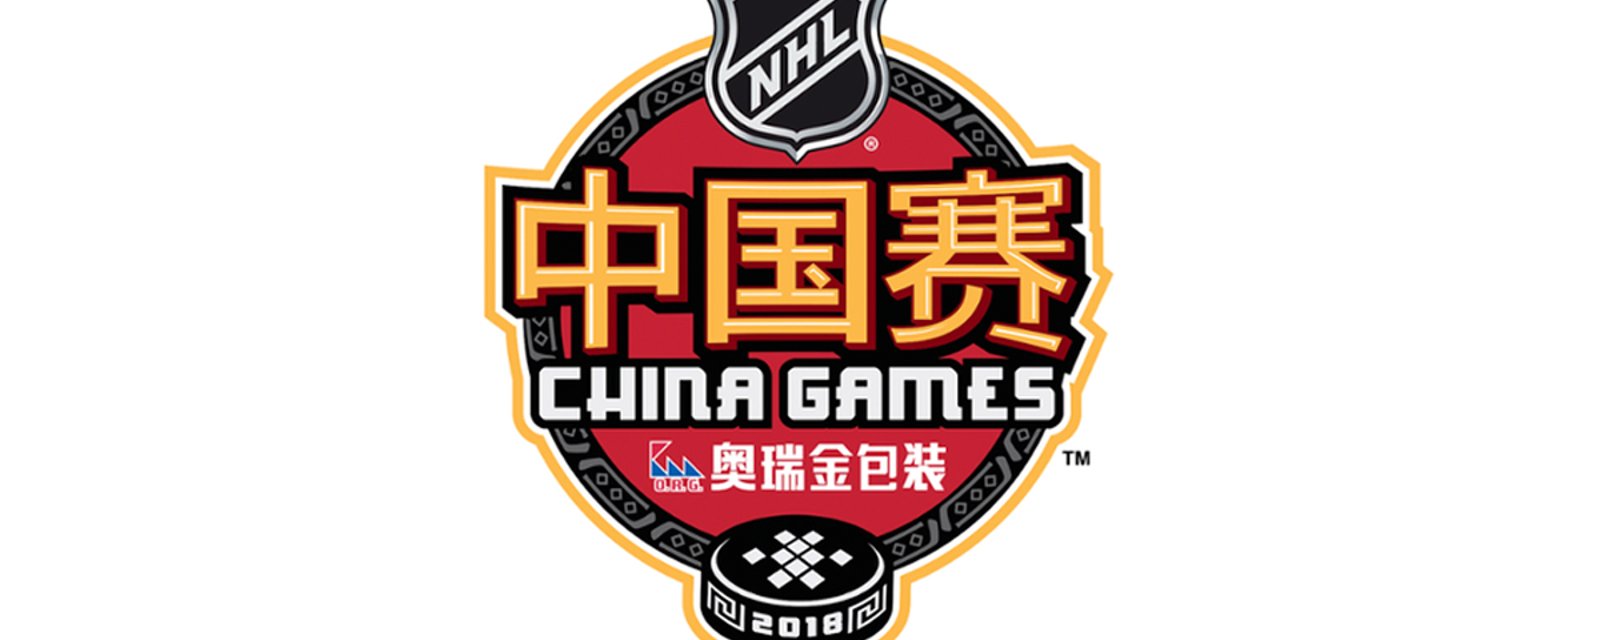 NHL cancels upcoming China games